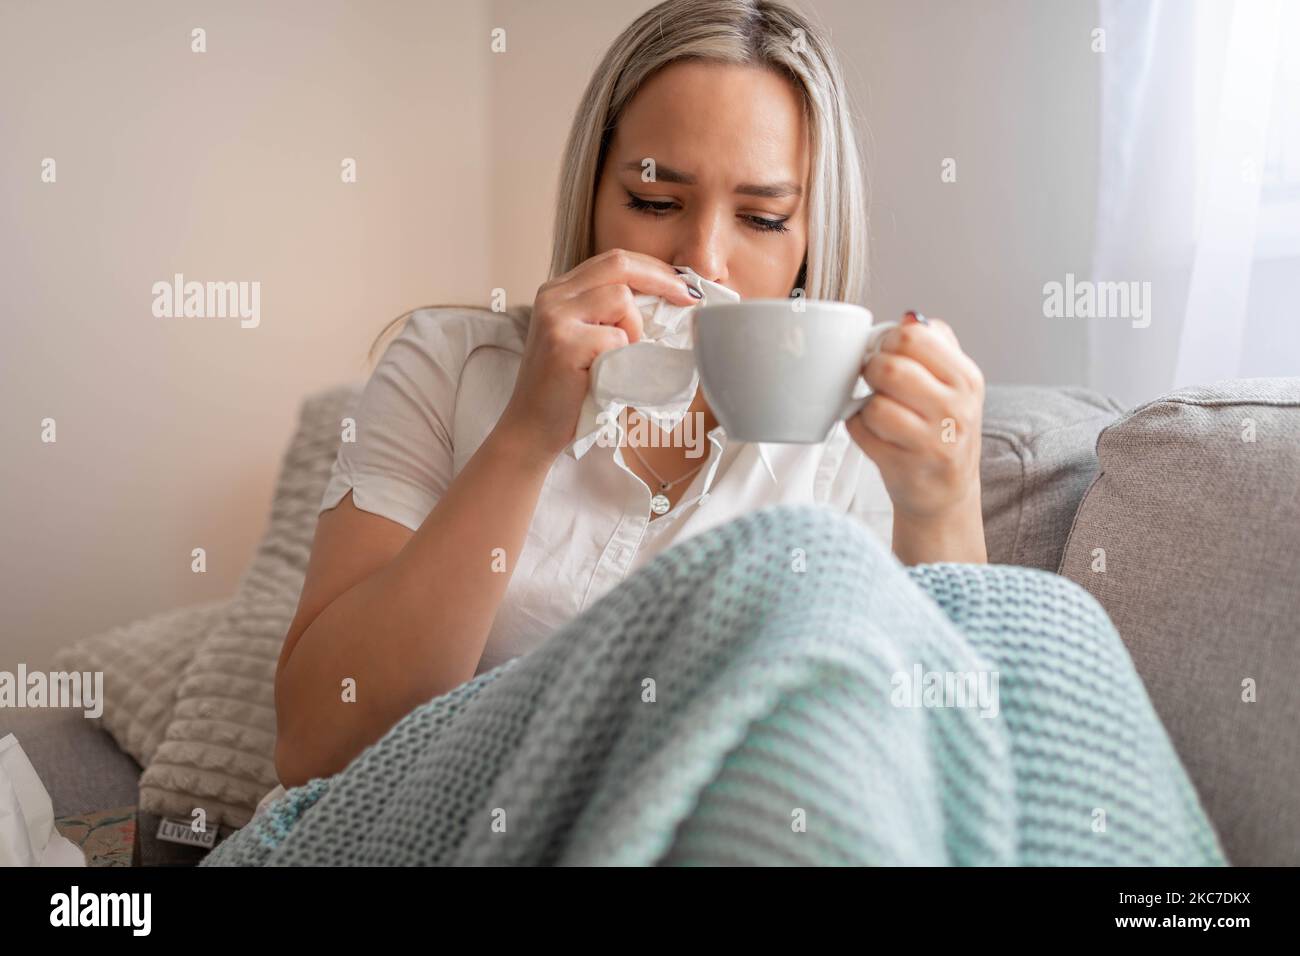 Kranke Frau, die unter der Decke sitzt. Kranke Frau mit saisonalen Infektionen, Grippe, Allergie im Bett liegend. Kranke Frau mit einer Decke bedeckt, die Tee trinkt Stockfoto